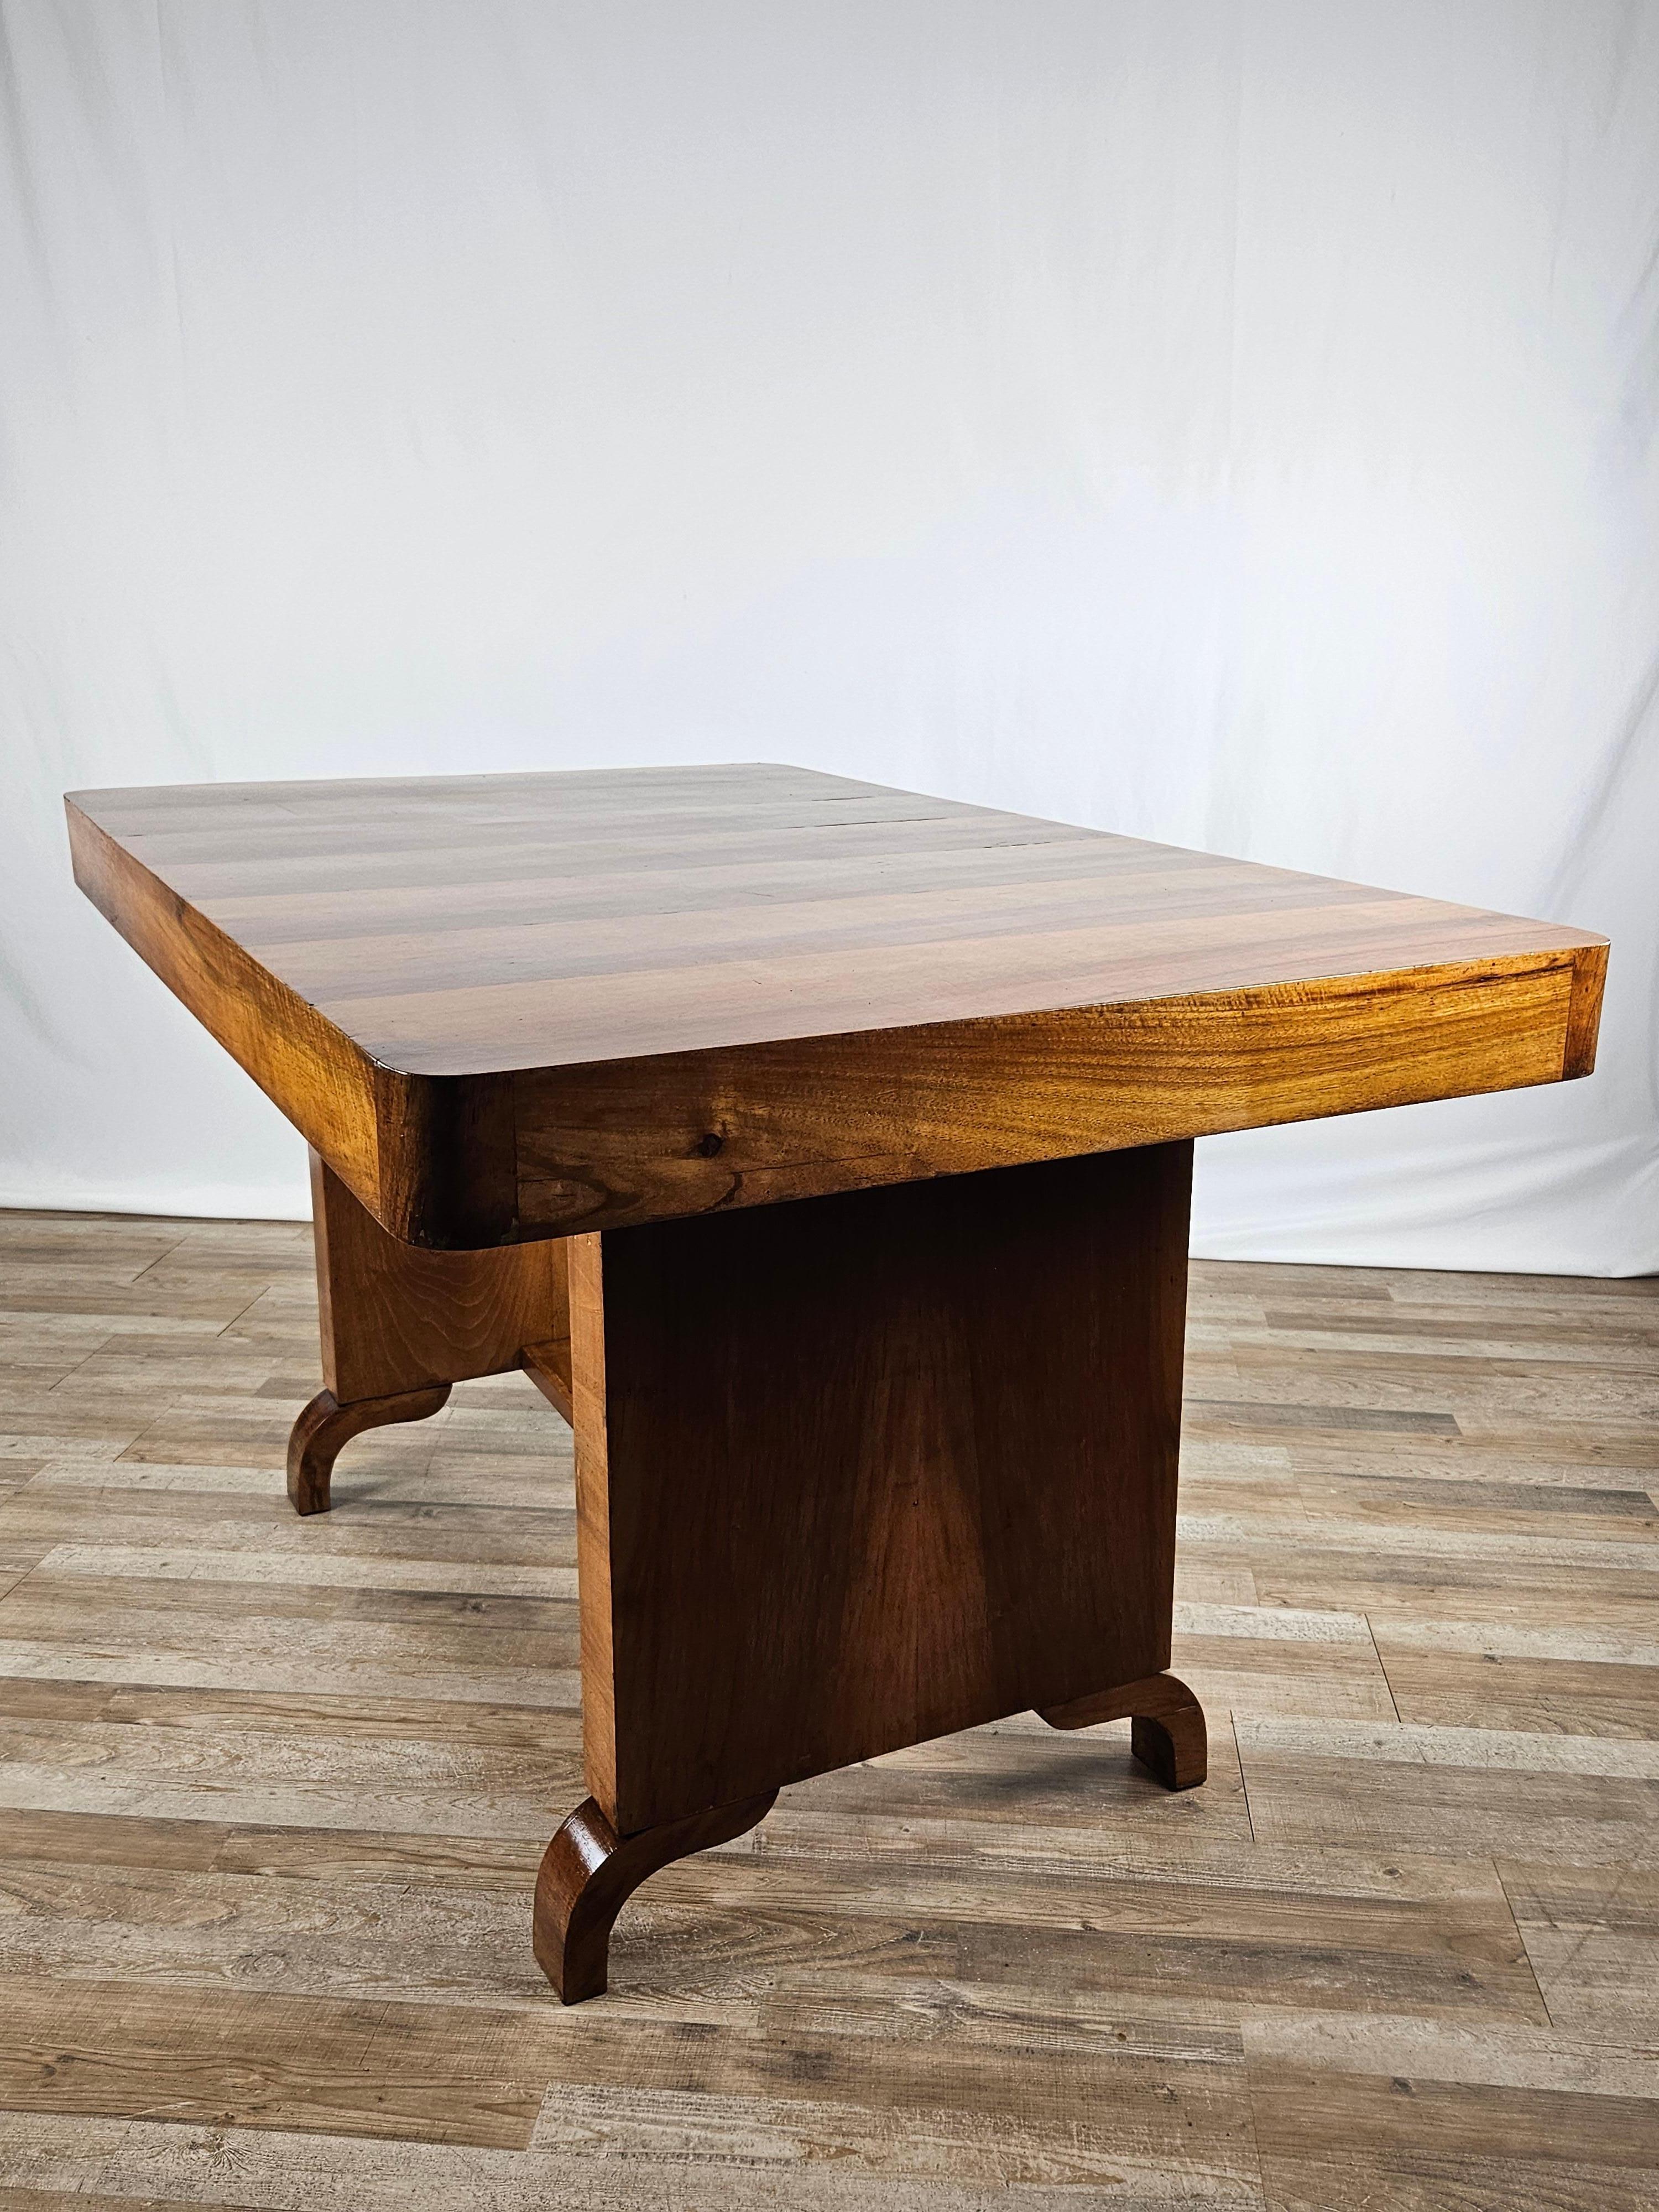 Table élégante et raffinée de style Art Déco des années 1930, entièrement réalisée en bois de bruyère avec un plateau confortable pour 4 ou 6 personnes.

La table a un design linéaire et moderne, convenant à tout type d'environnement, de l'antique